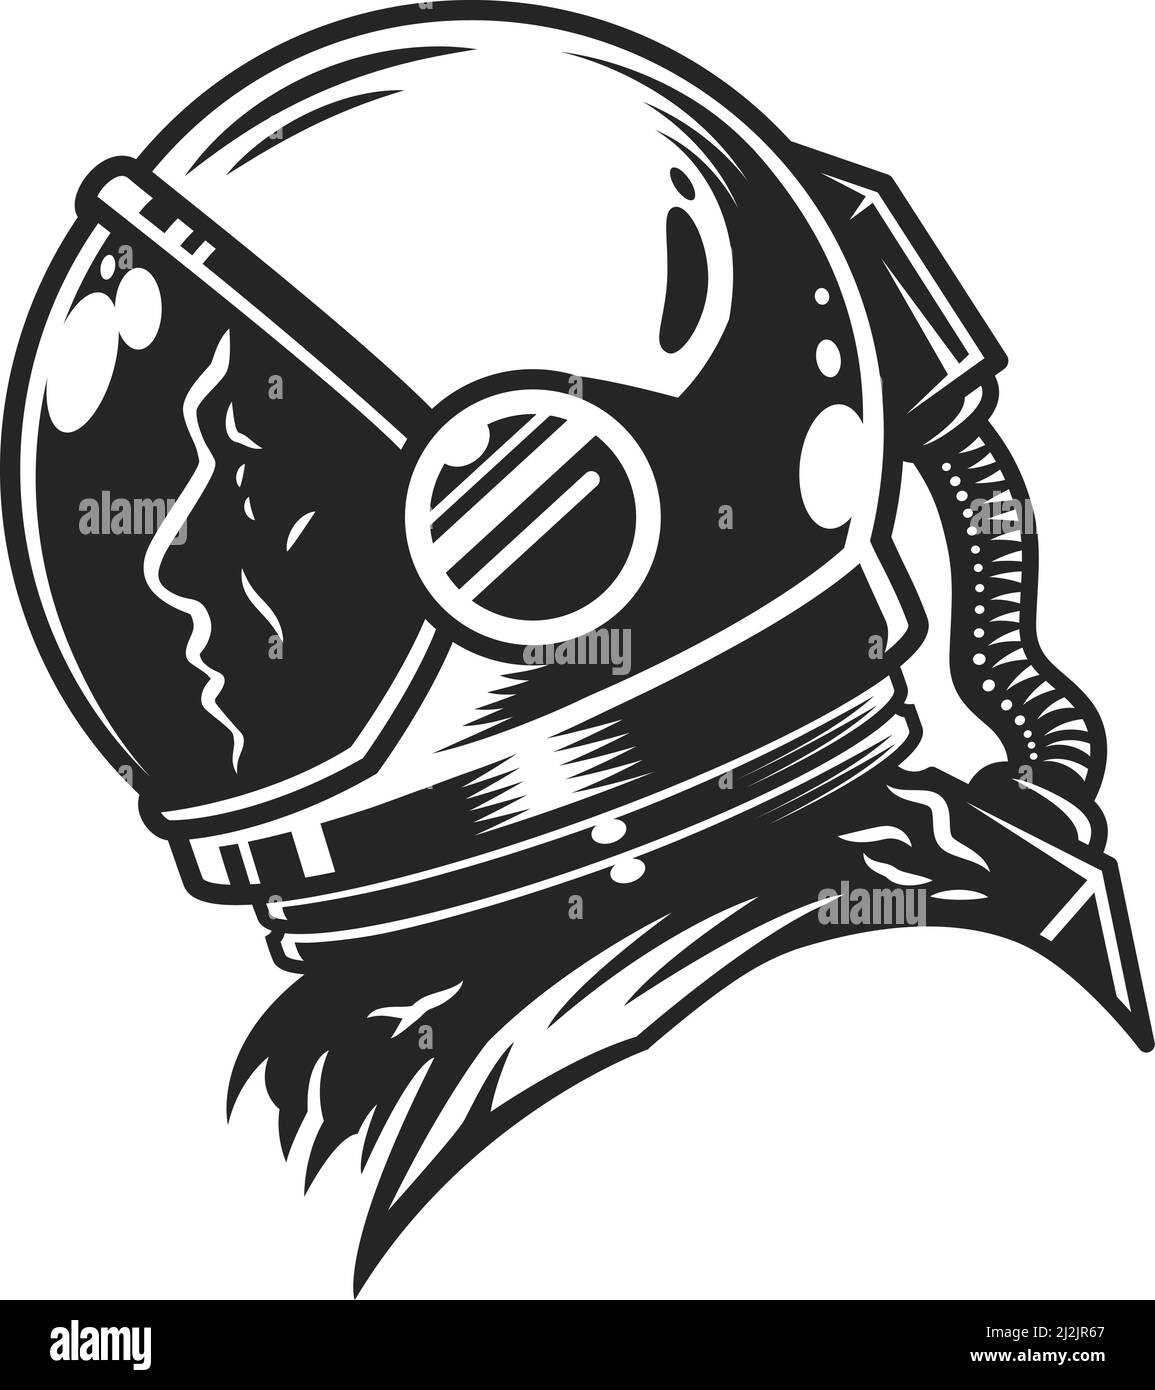 Modèle de vue de profil cosmonaute monochrome vintage en combinaison d'espace isolée illustration vectorielle Illustration de Vecteur